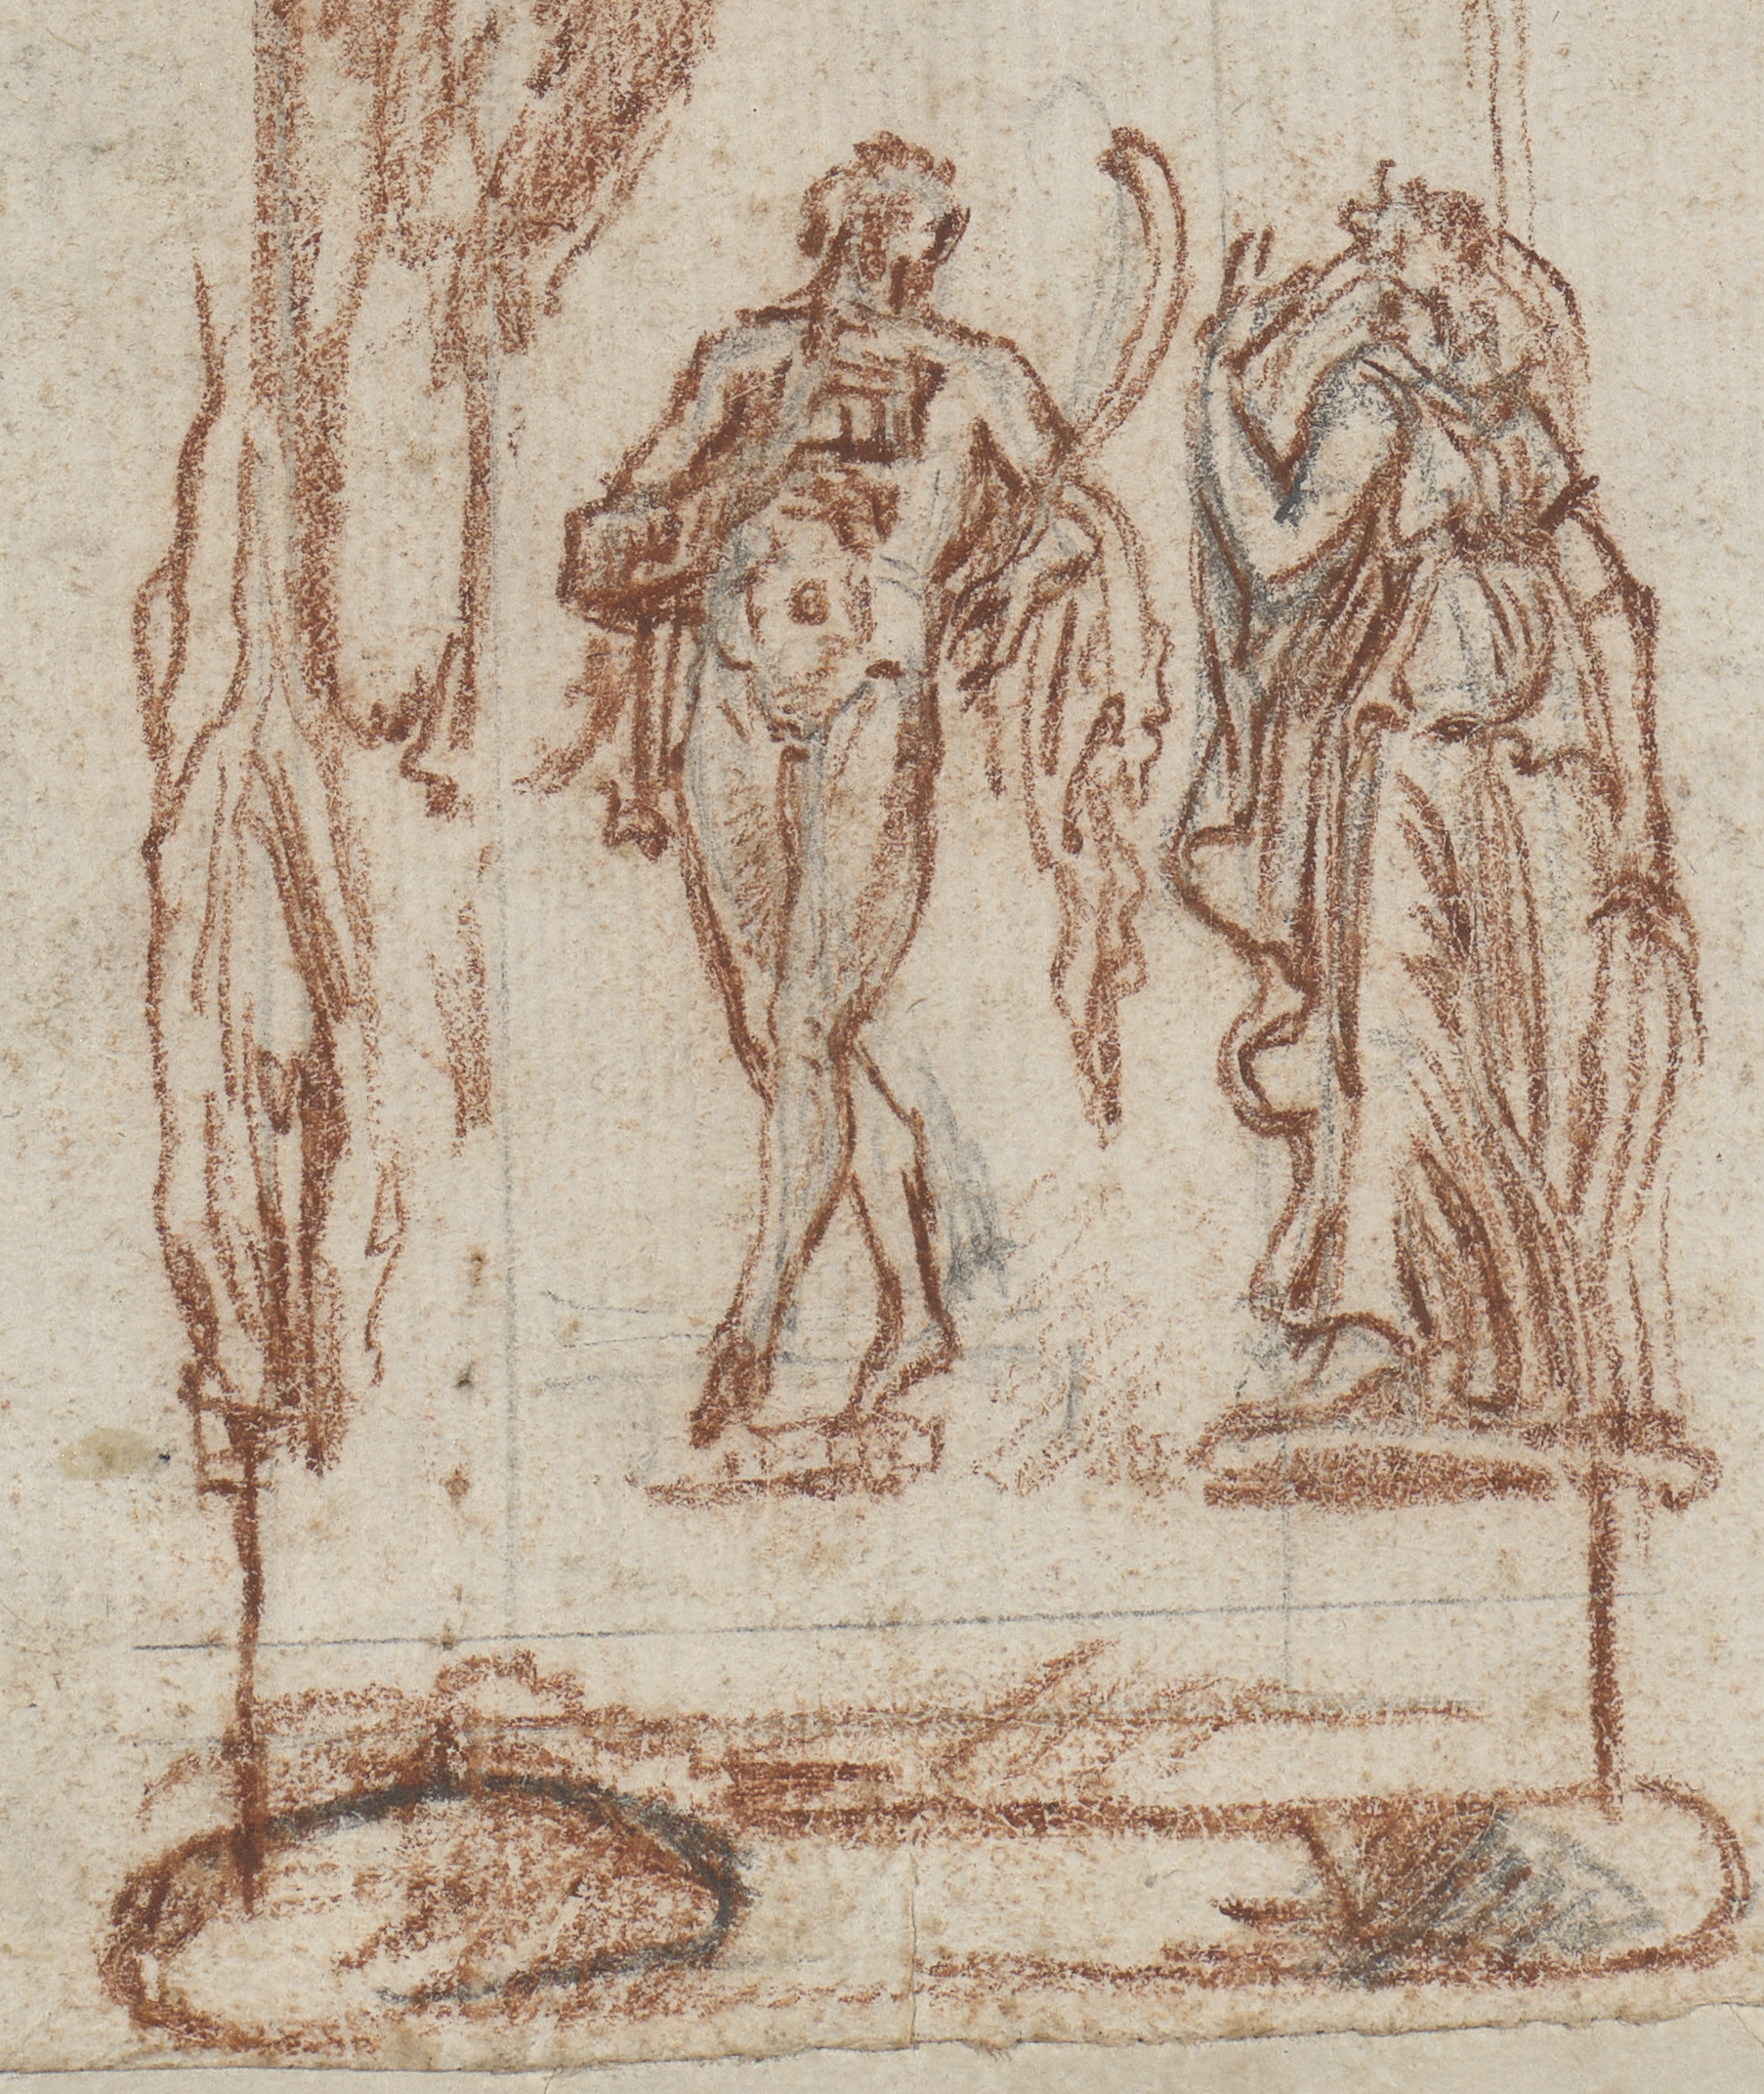 Die Zeichnung zeigt ein Detail der Meta Albani. Dargestellt sind die zwei unteren Figuren.